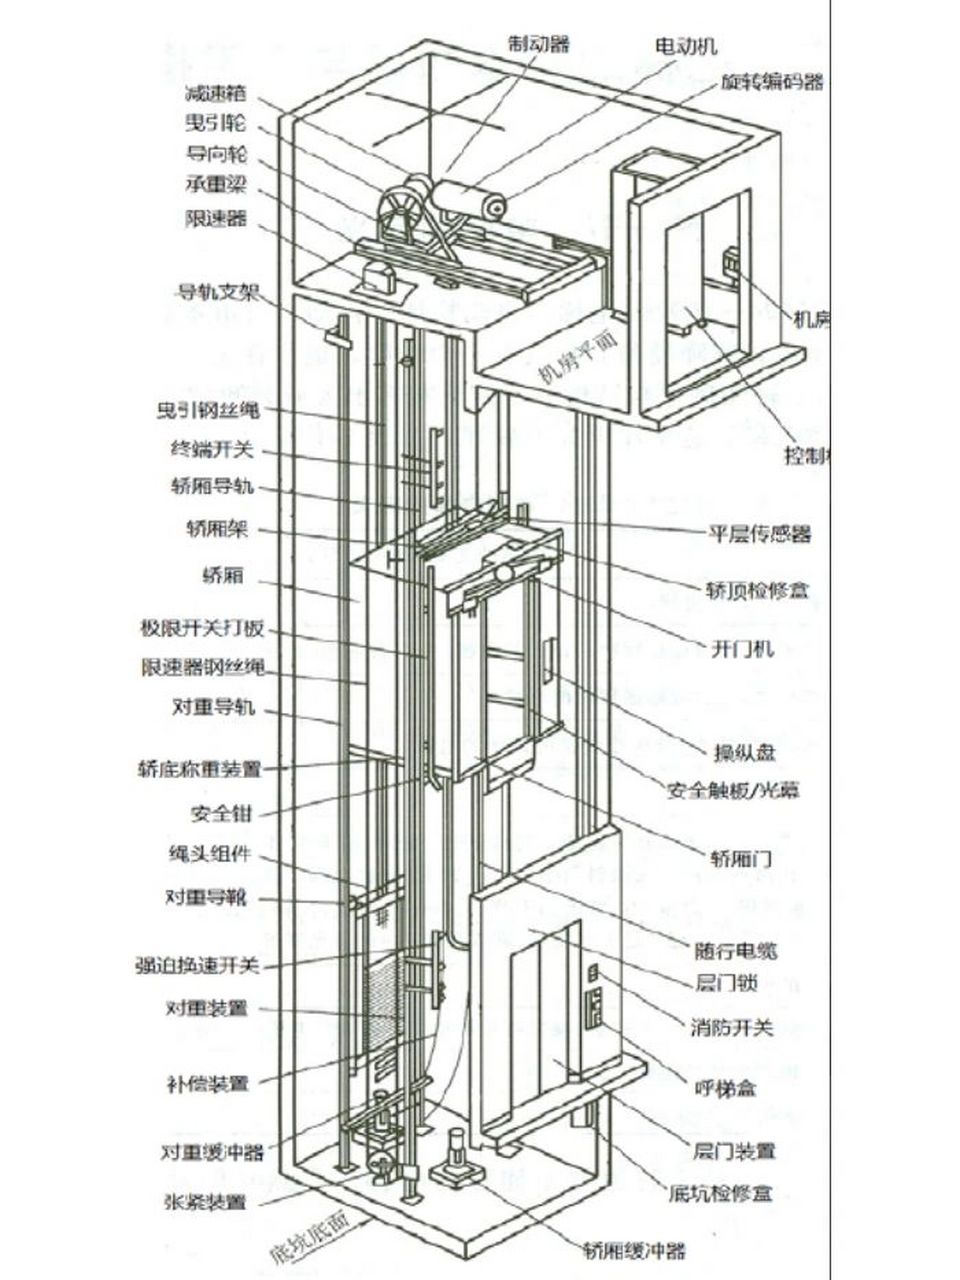 曳引电梯与强驱电梯的原理和比较 曳引电梯原理 (gb 7588—2003)对